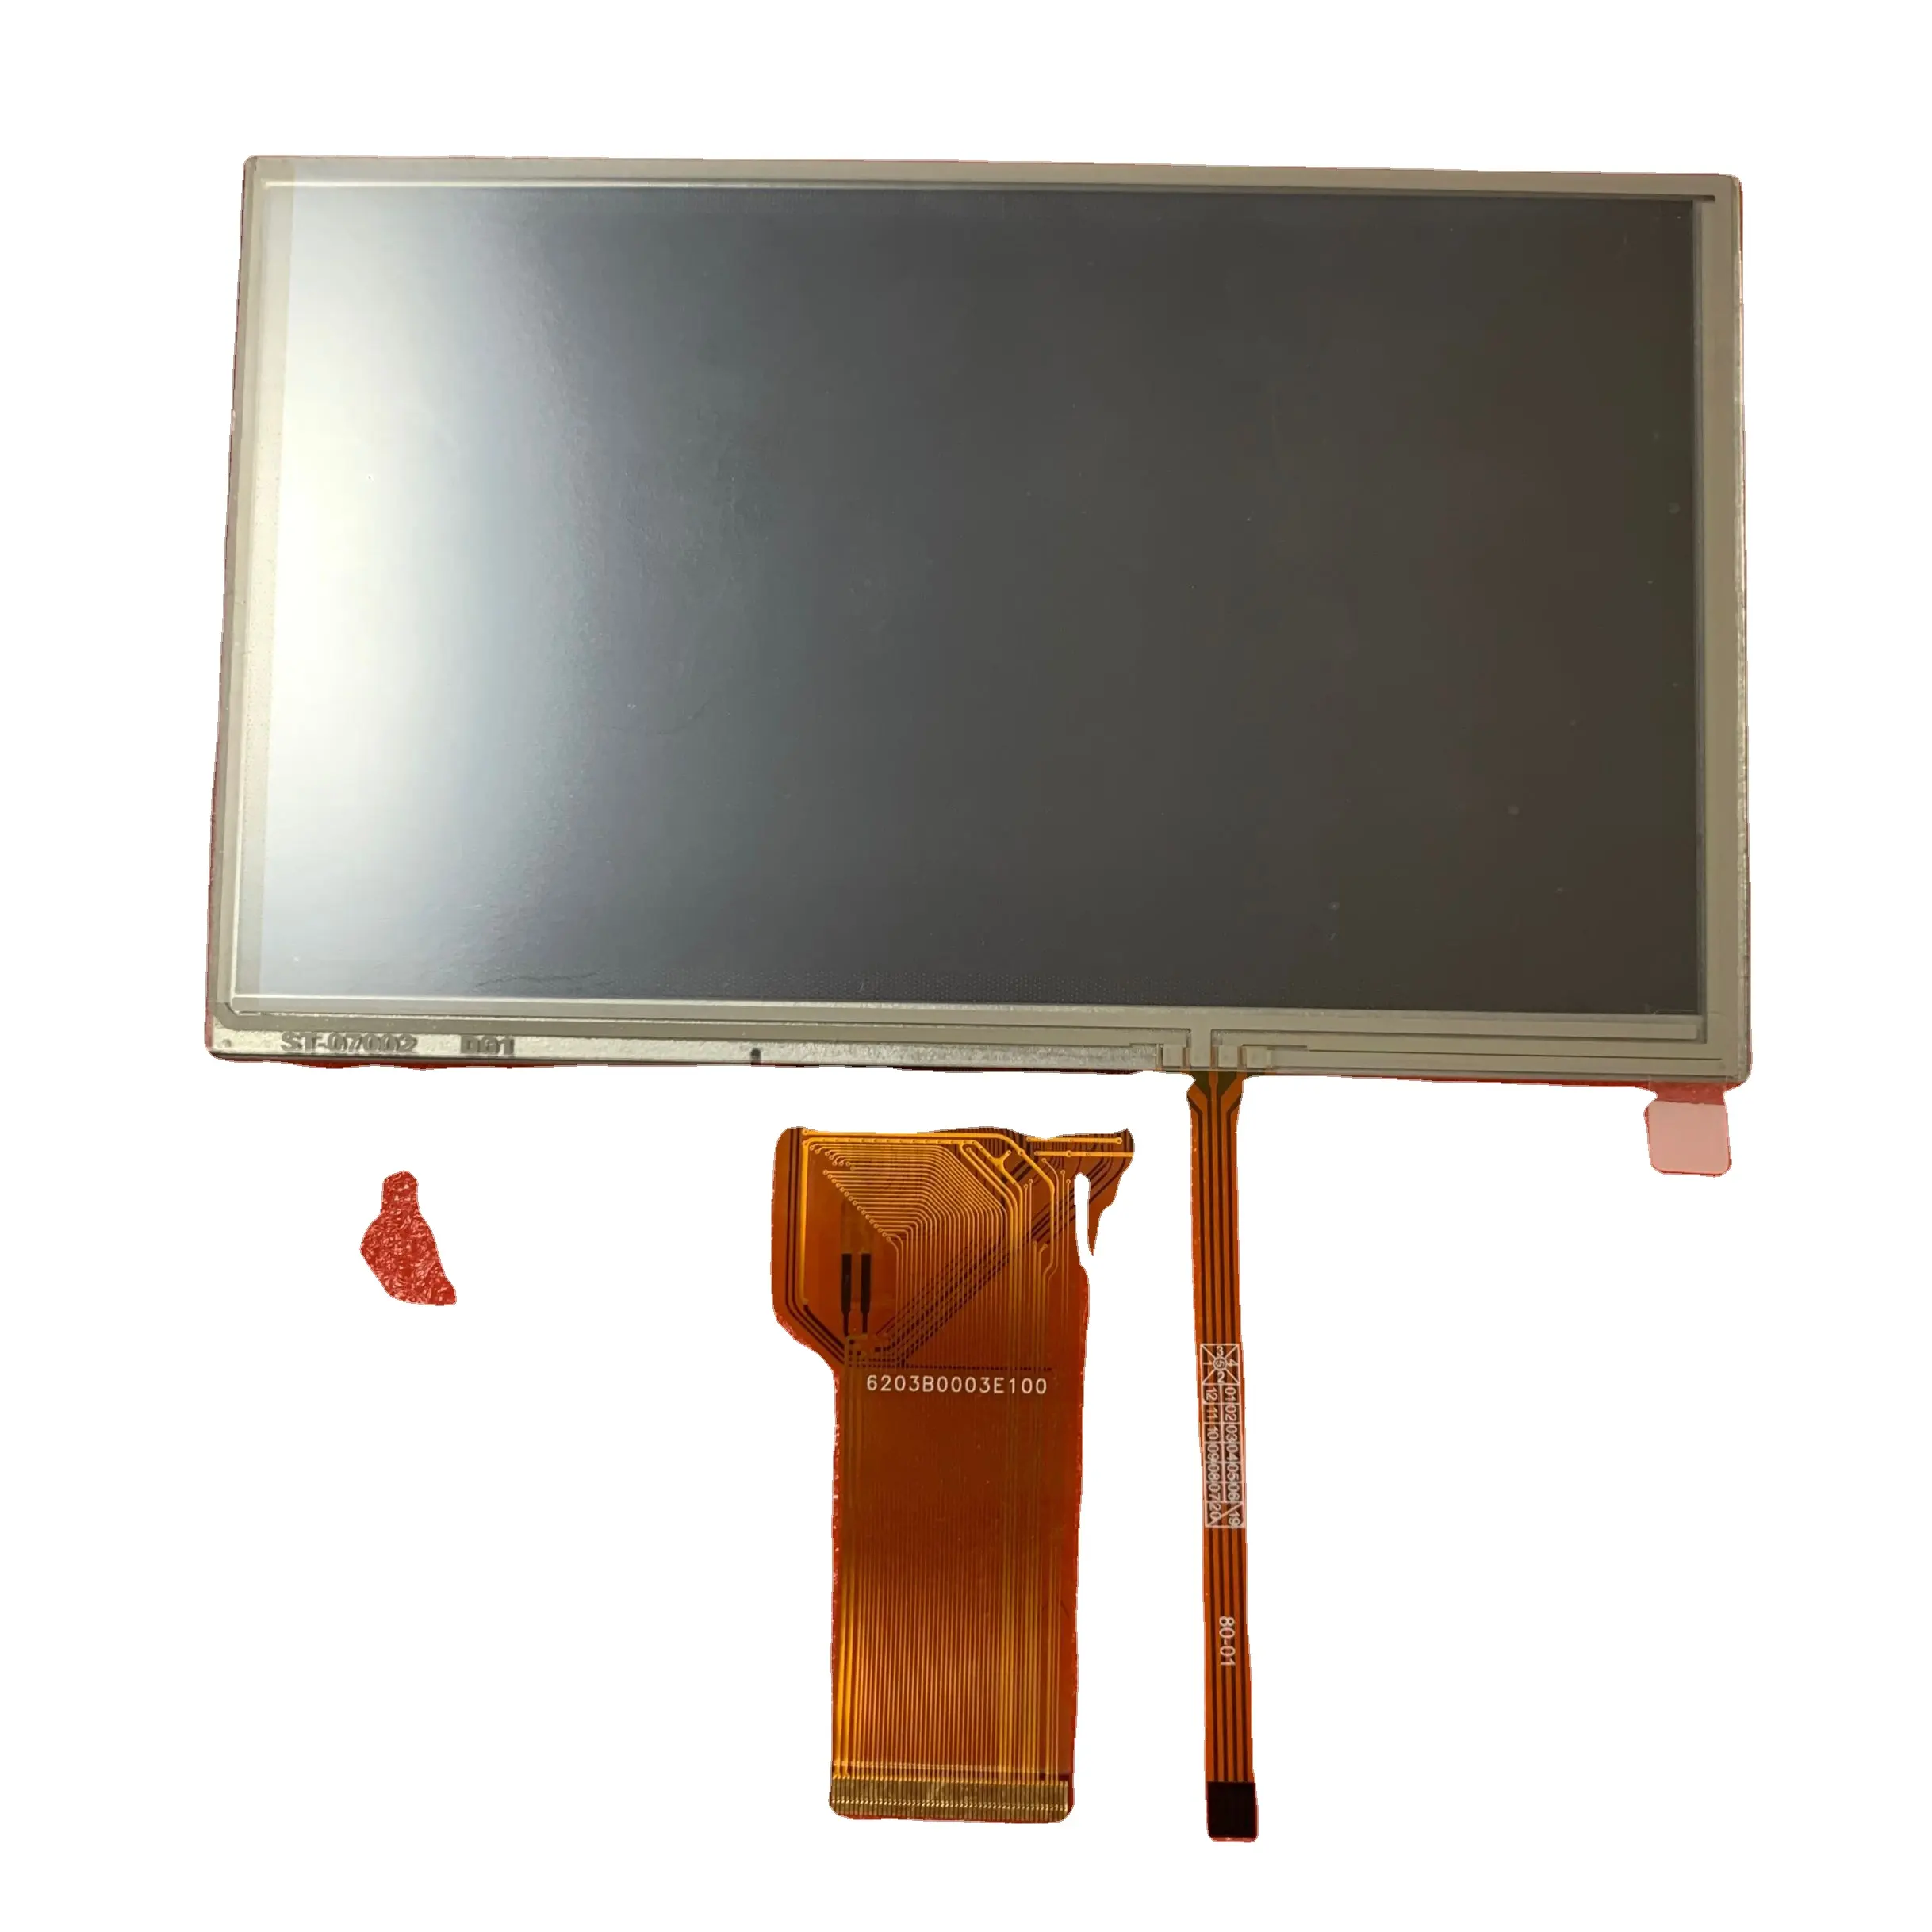 Painel de tela lcd de 7 polegadas com painel touch, para substituição korg pa600 korg pa900